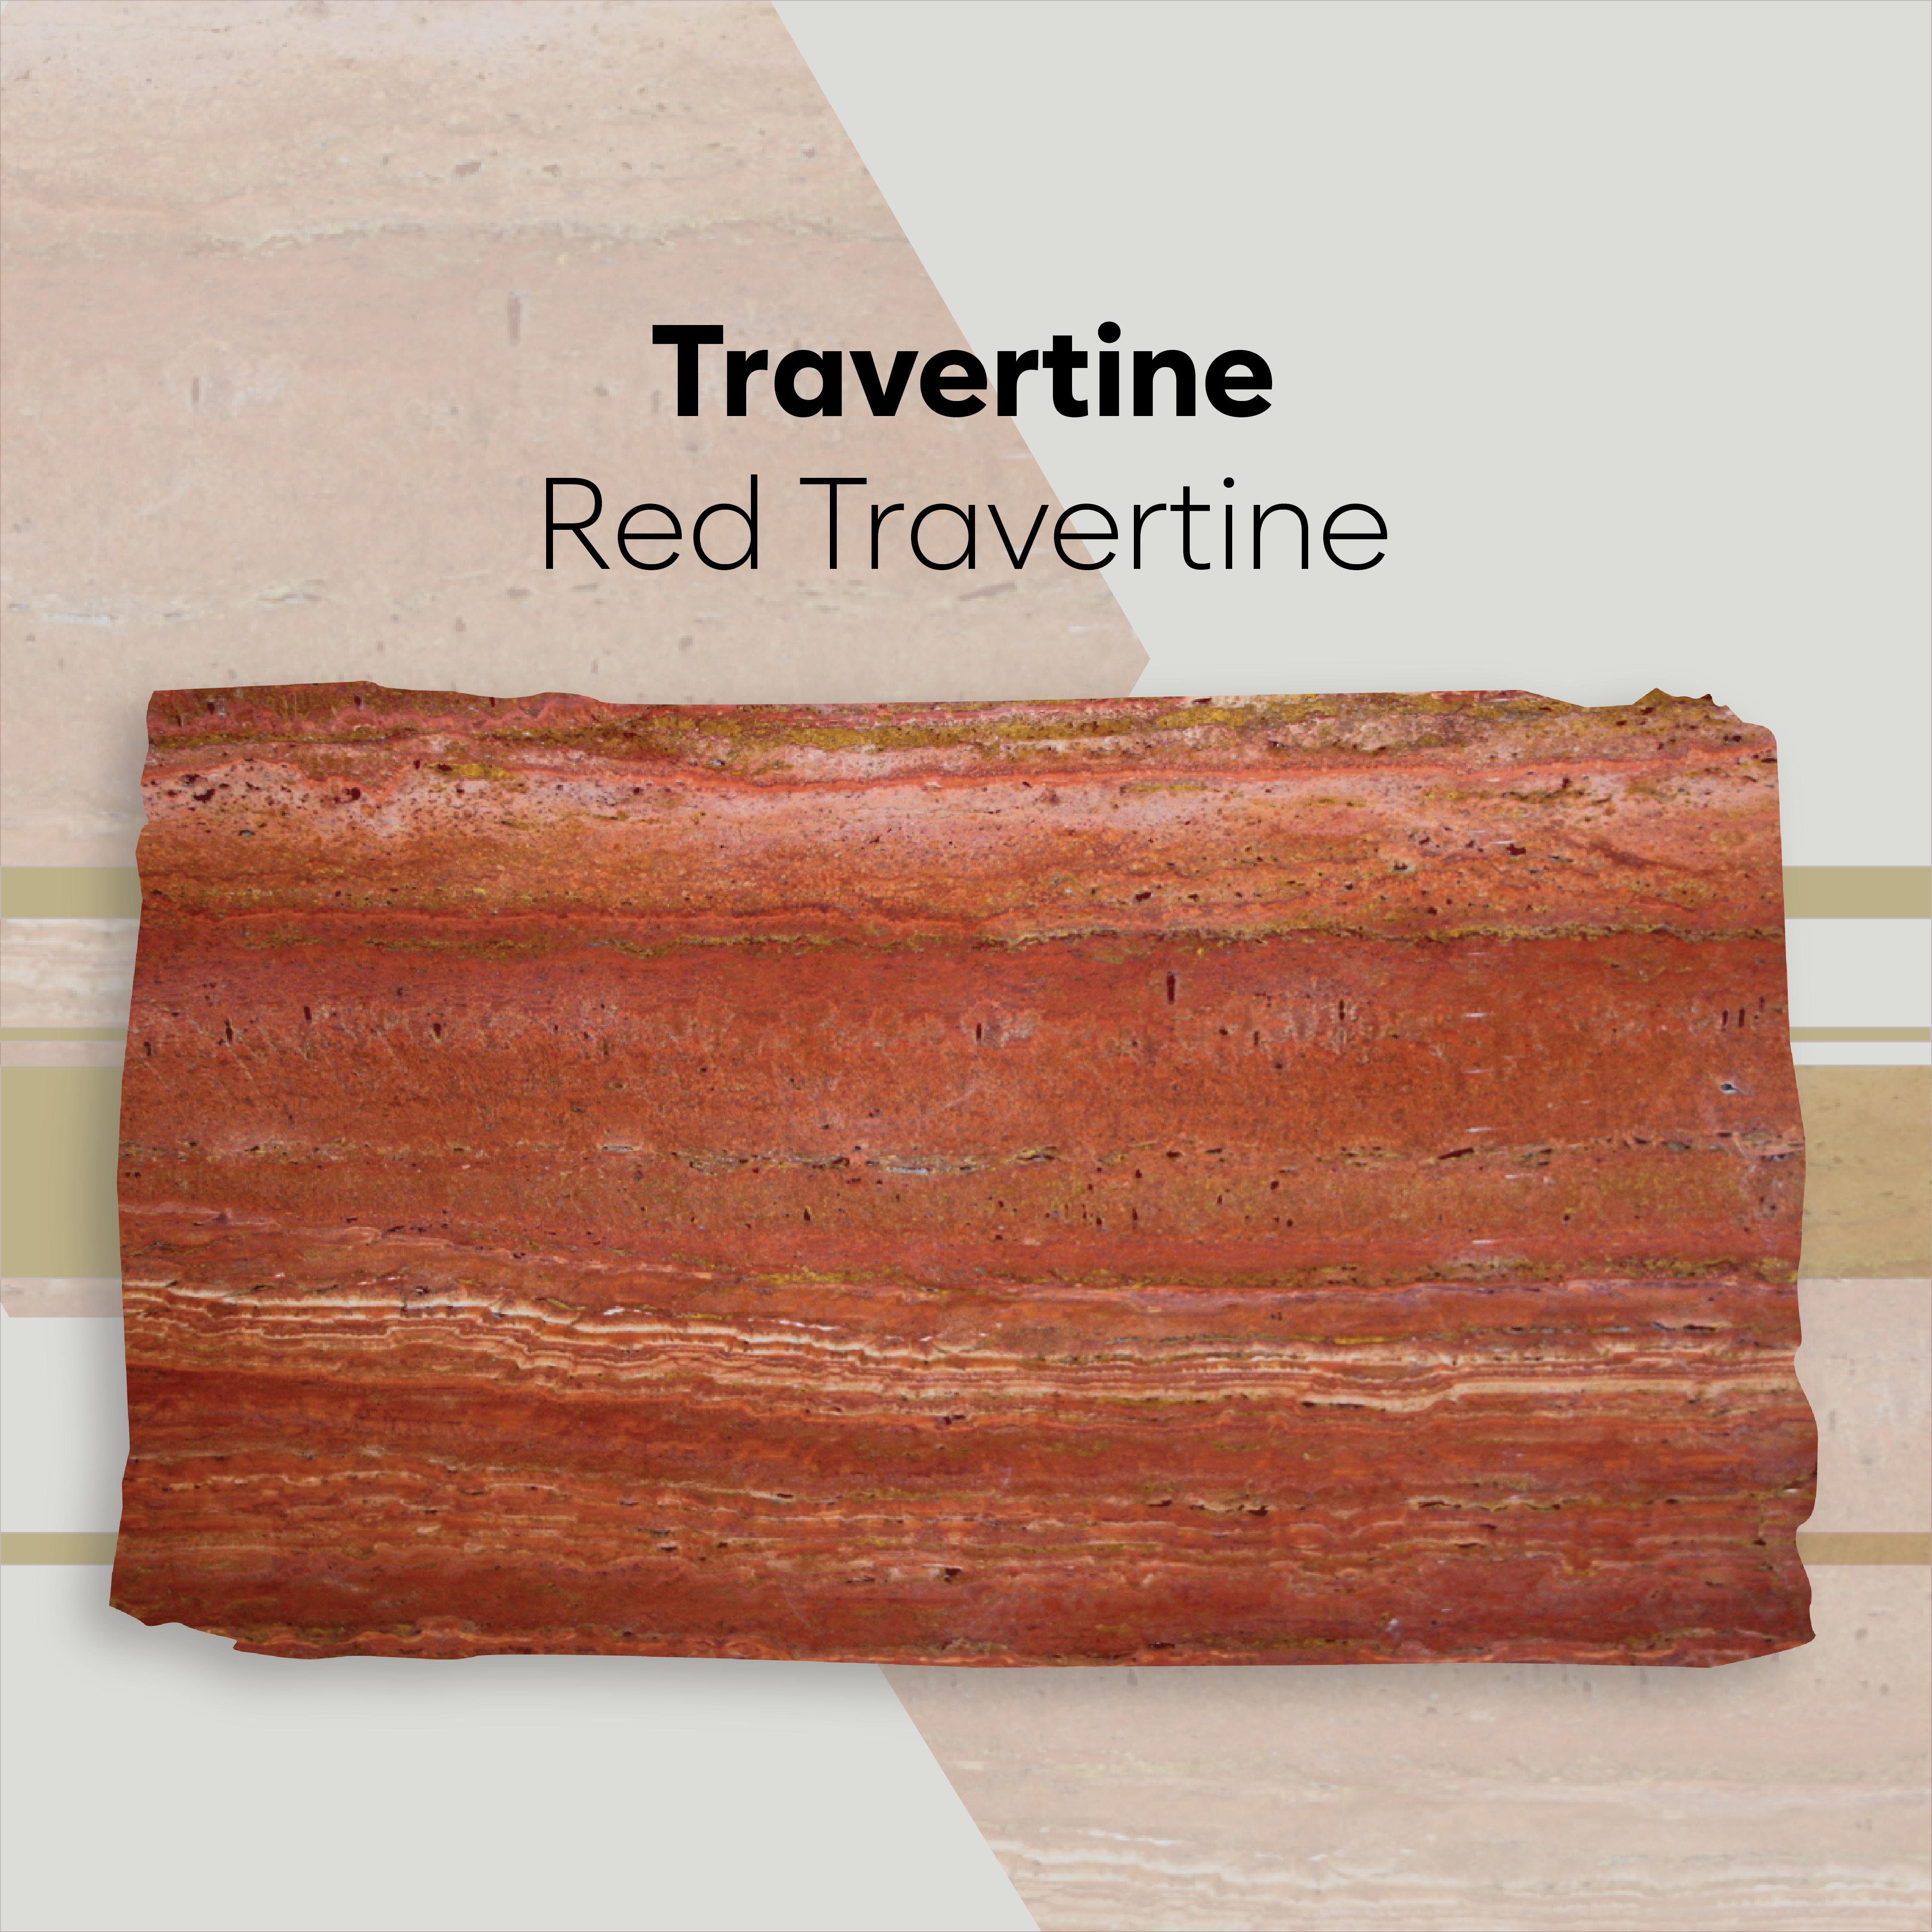 Red Travertine